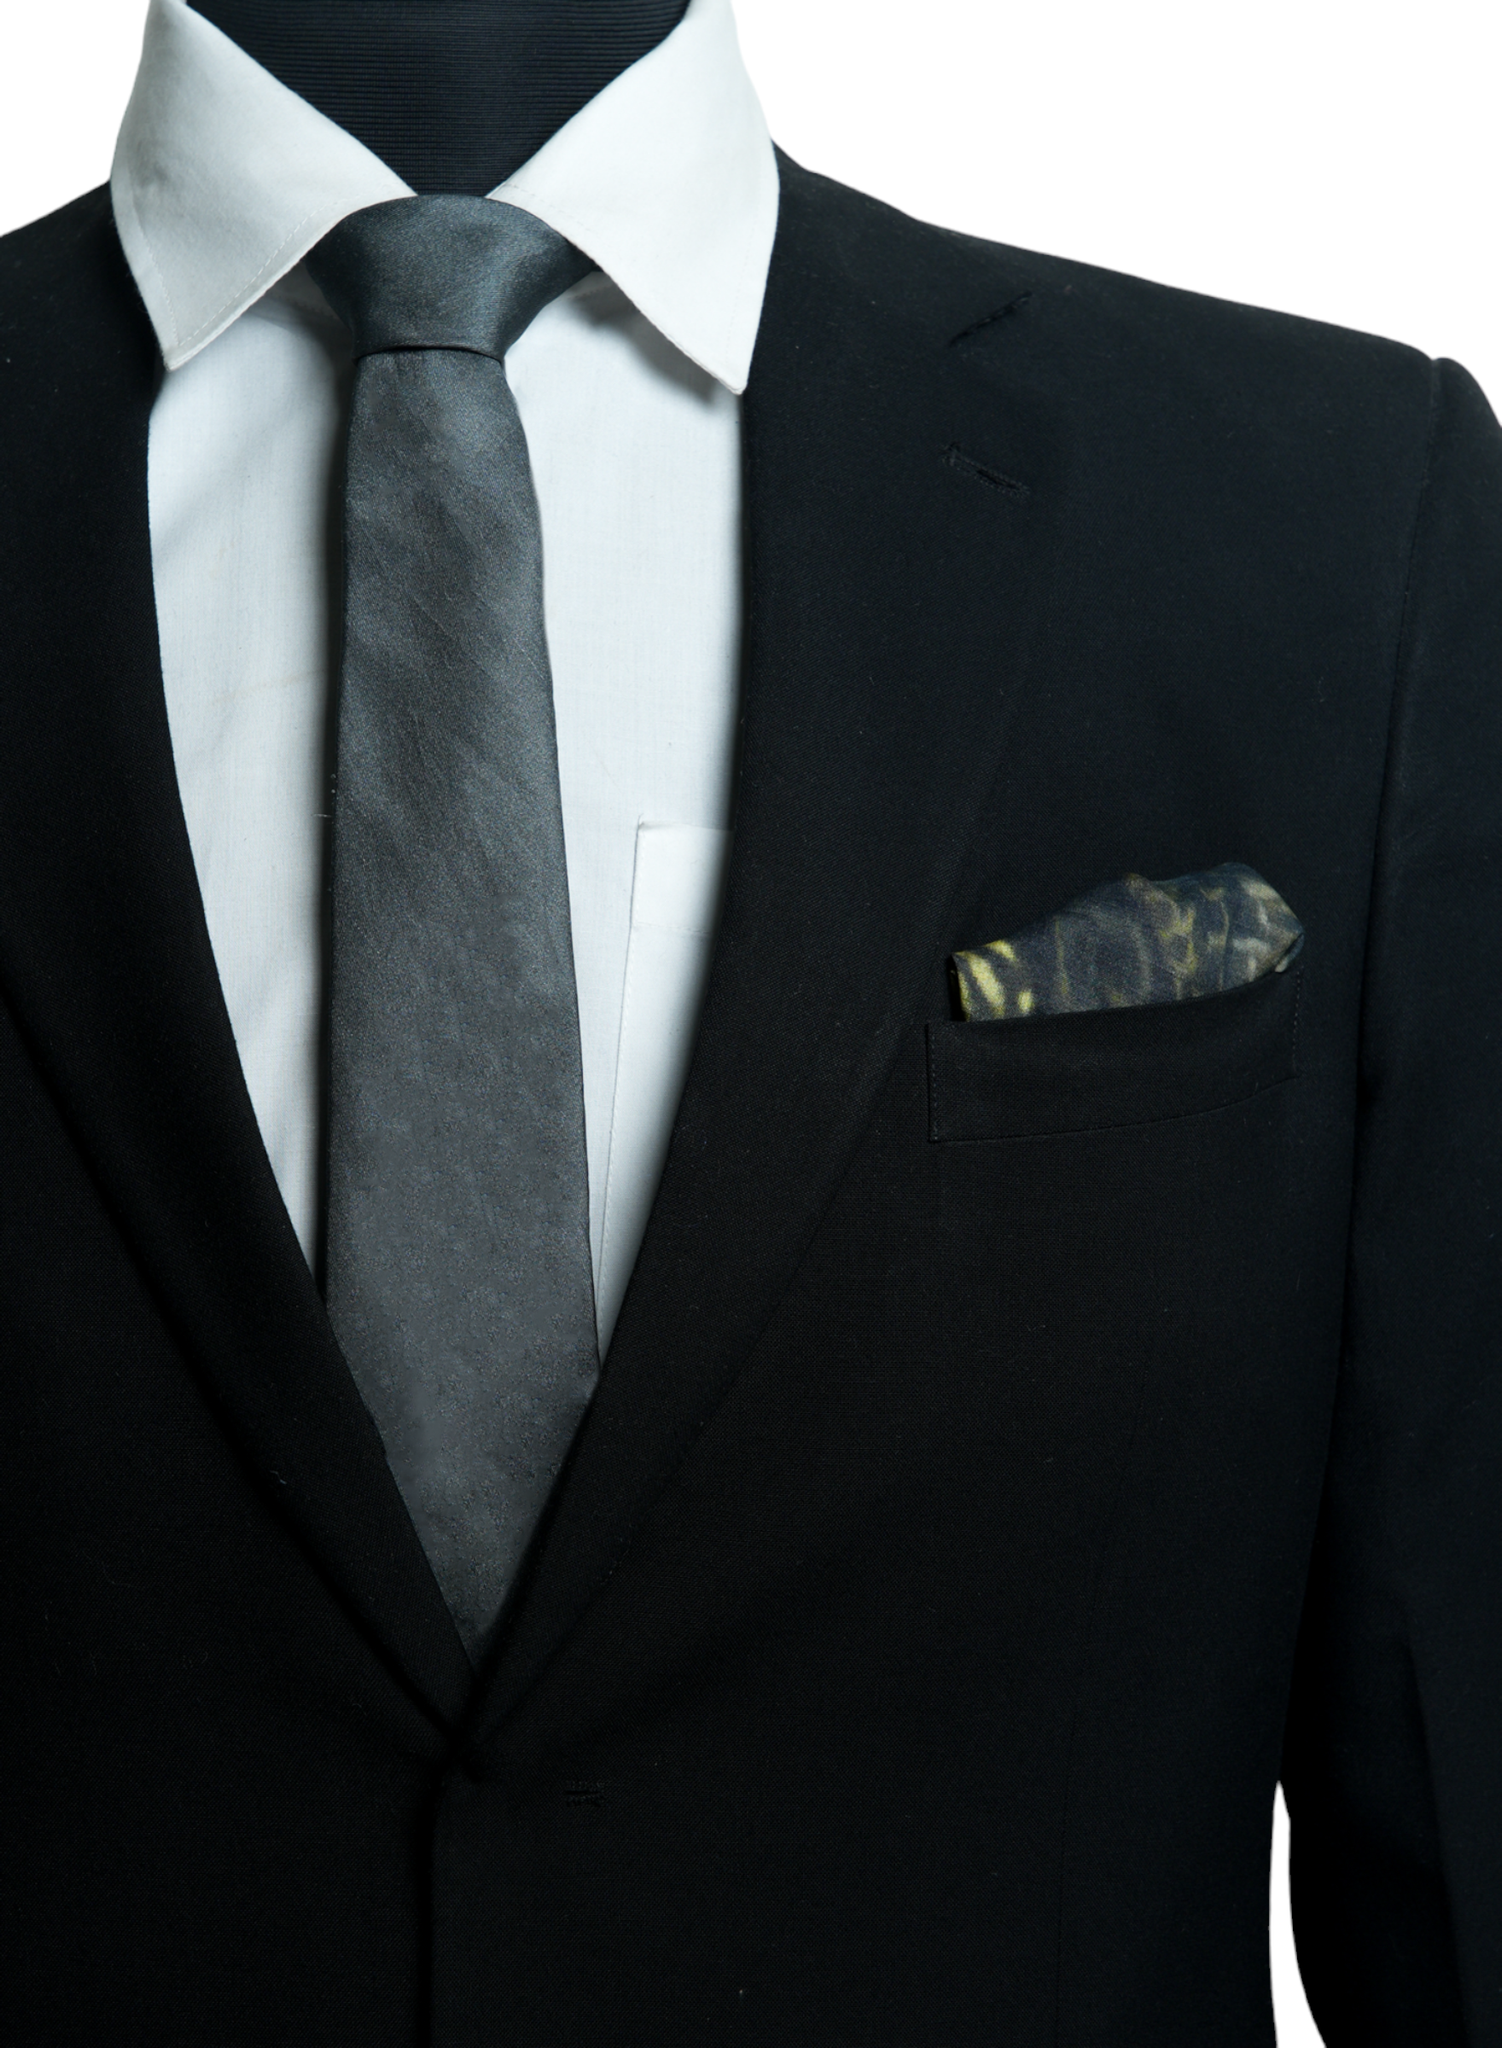 Chokore The Eagle Has Landed - Pocket Square & Dark Grey color silk tie for men